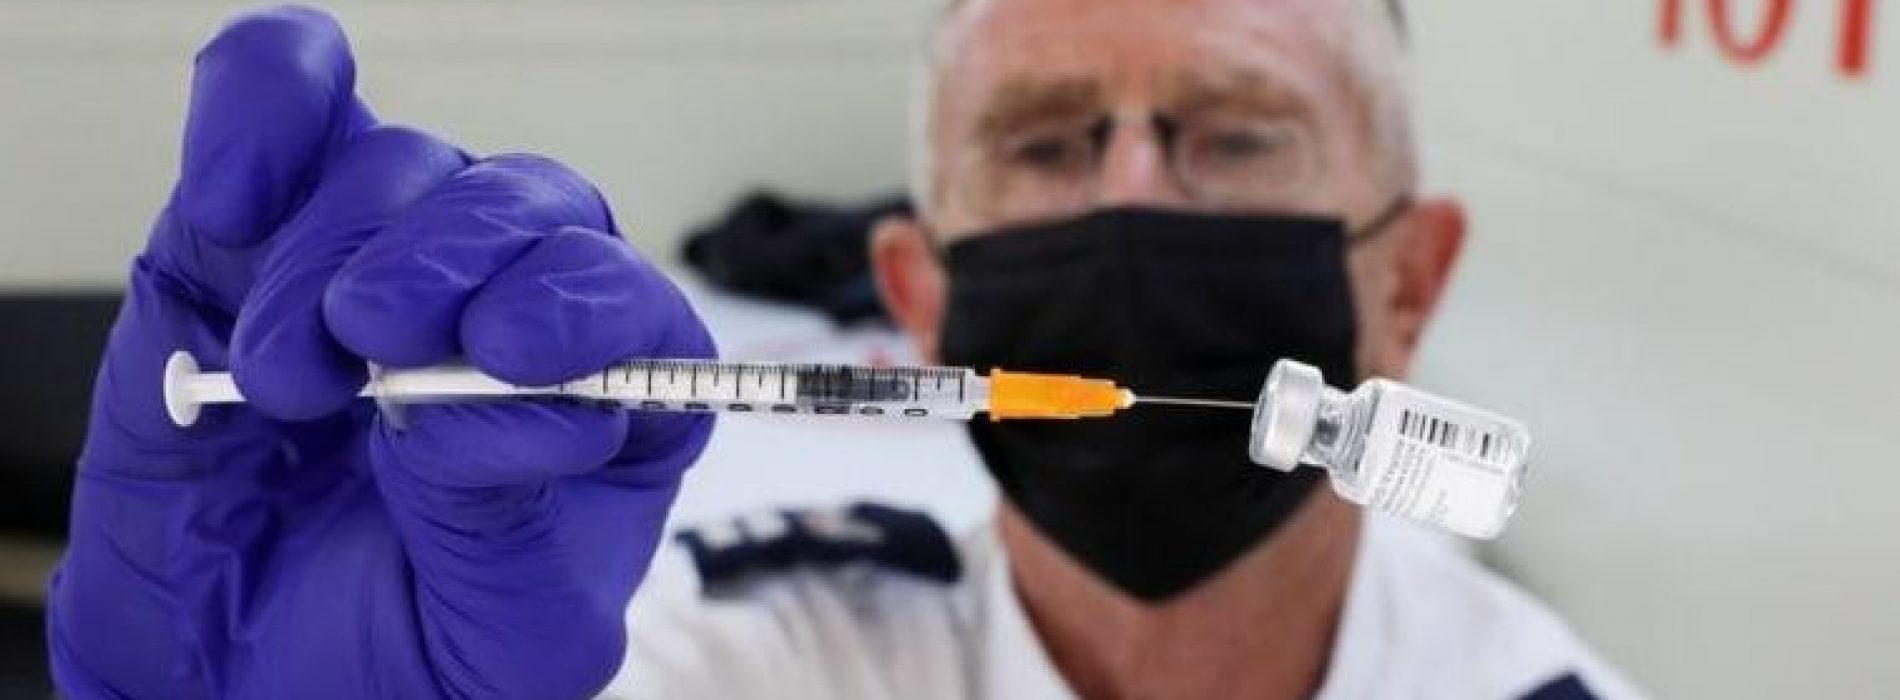 Israël wordt eerste land ter wereld dat 3e COVID-shot pusht voor al gevaccineerden